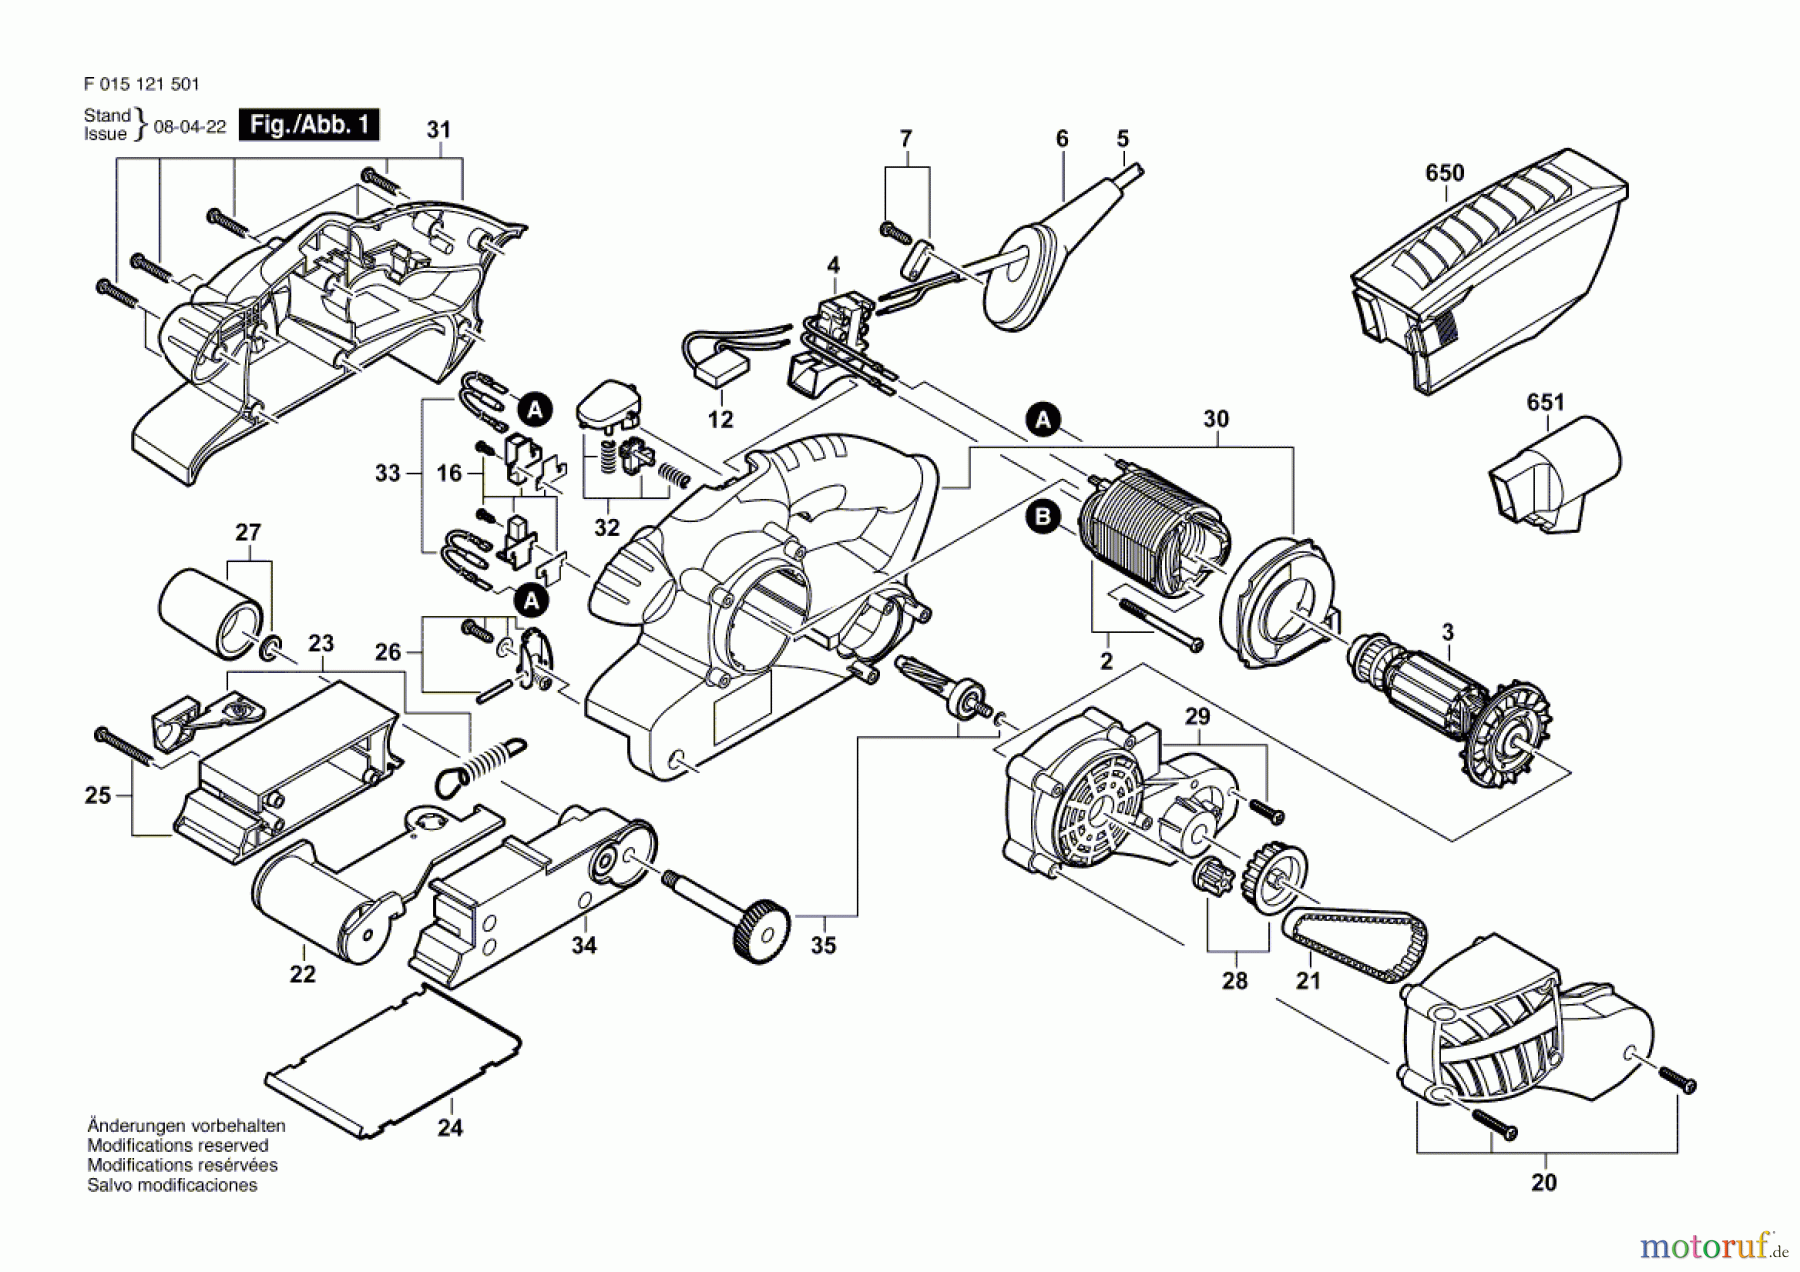  Bosch Werkzeug Bandschleifer 1215 Seite 1